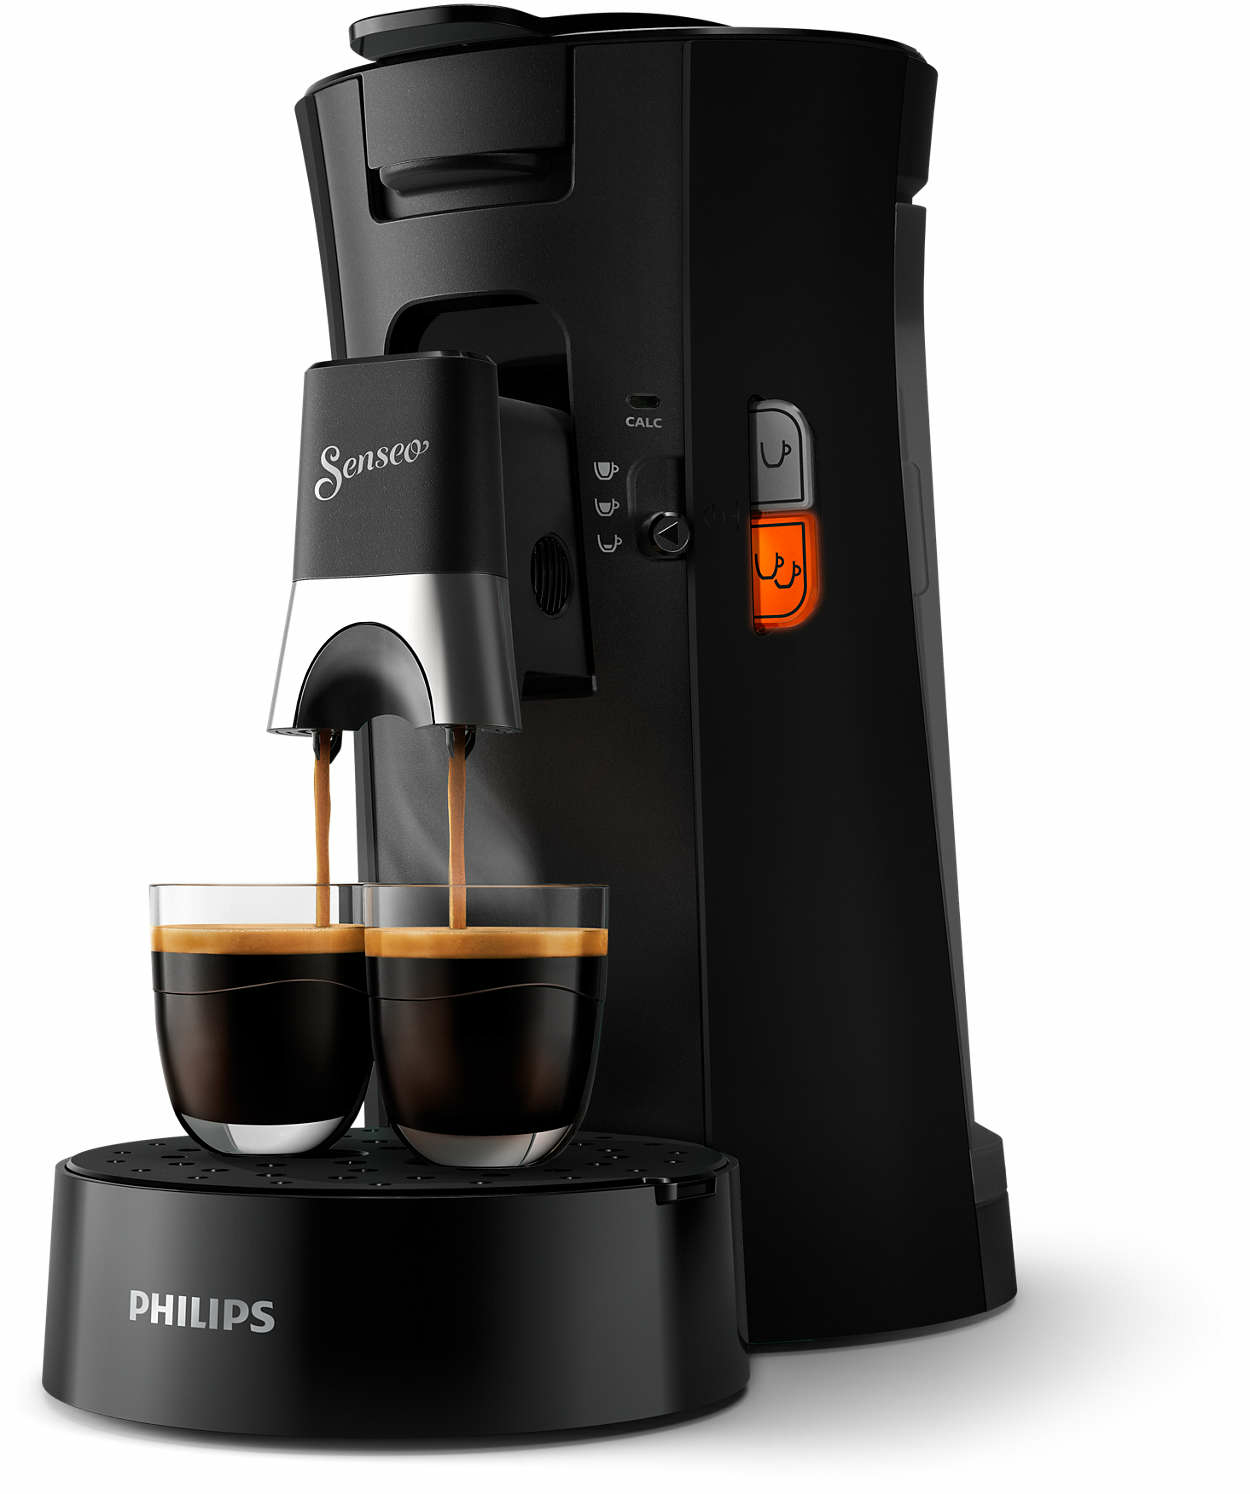 Philips by Versuni CSA230/60 coffee maker